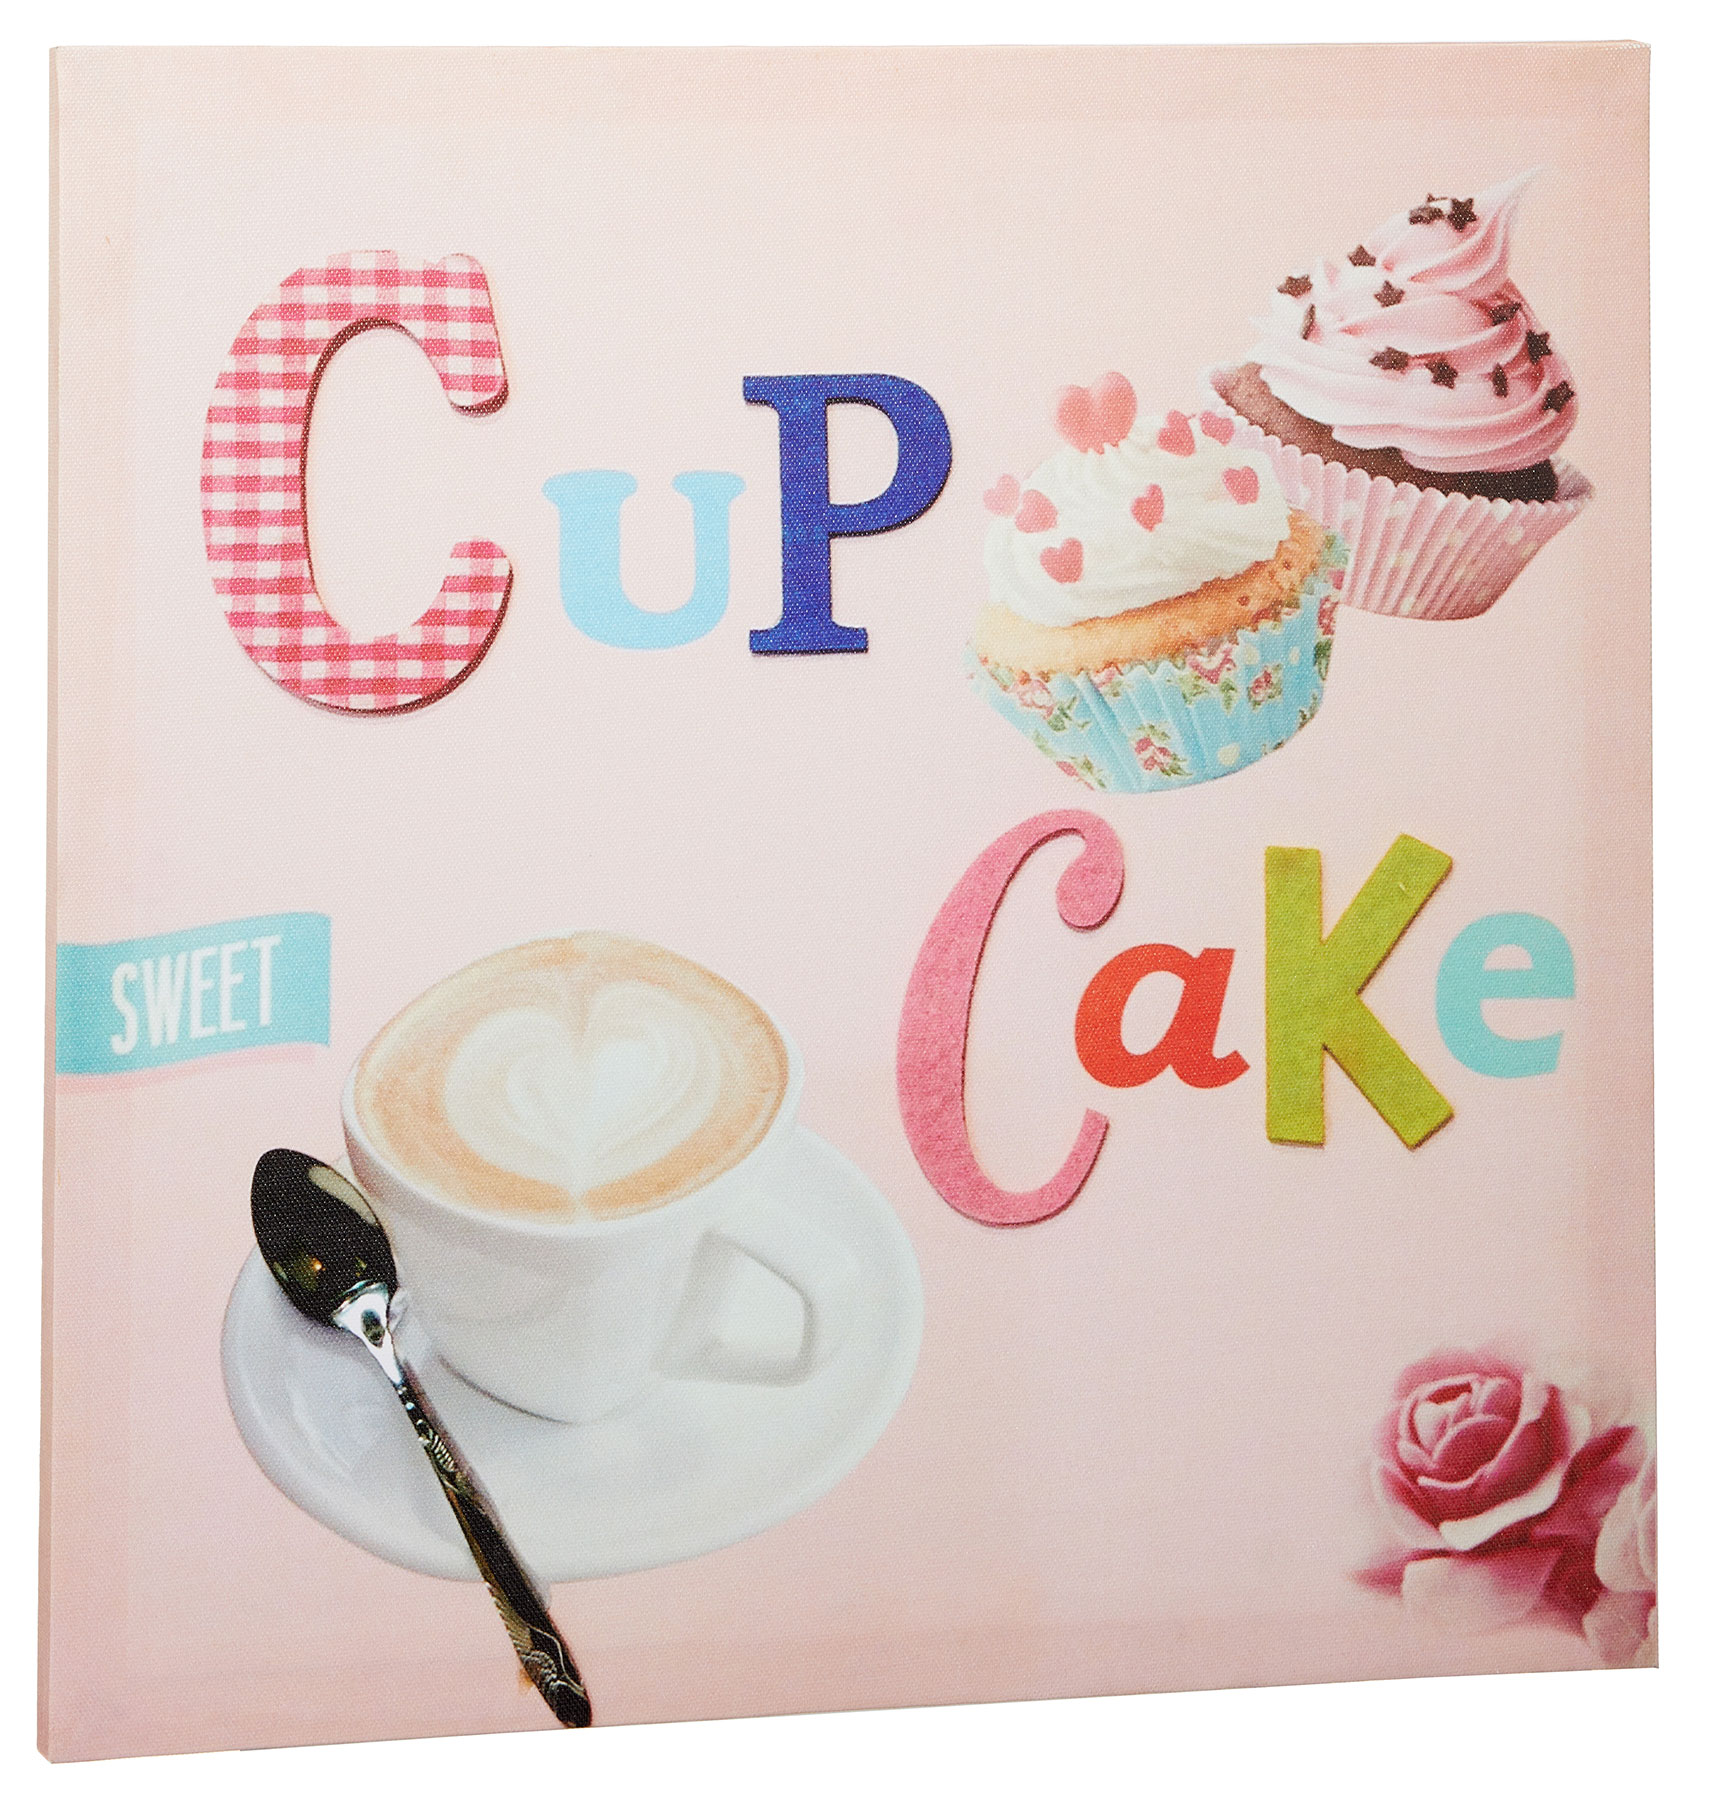 Wanddeko Muffin Kuchen Bild Cake Rosa Küche Cup 38x38cm Leinwand Wandbild Cafe